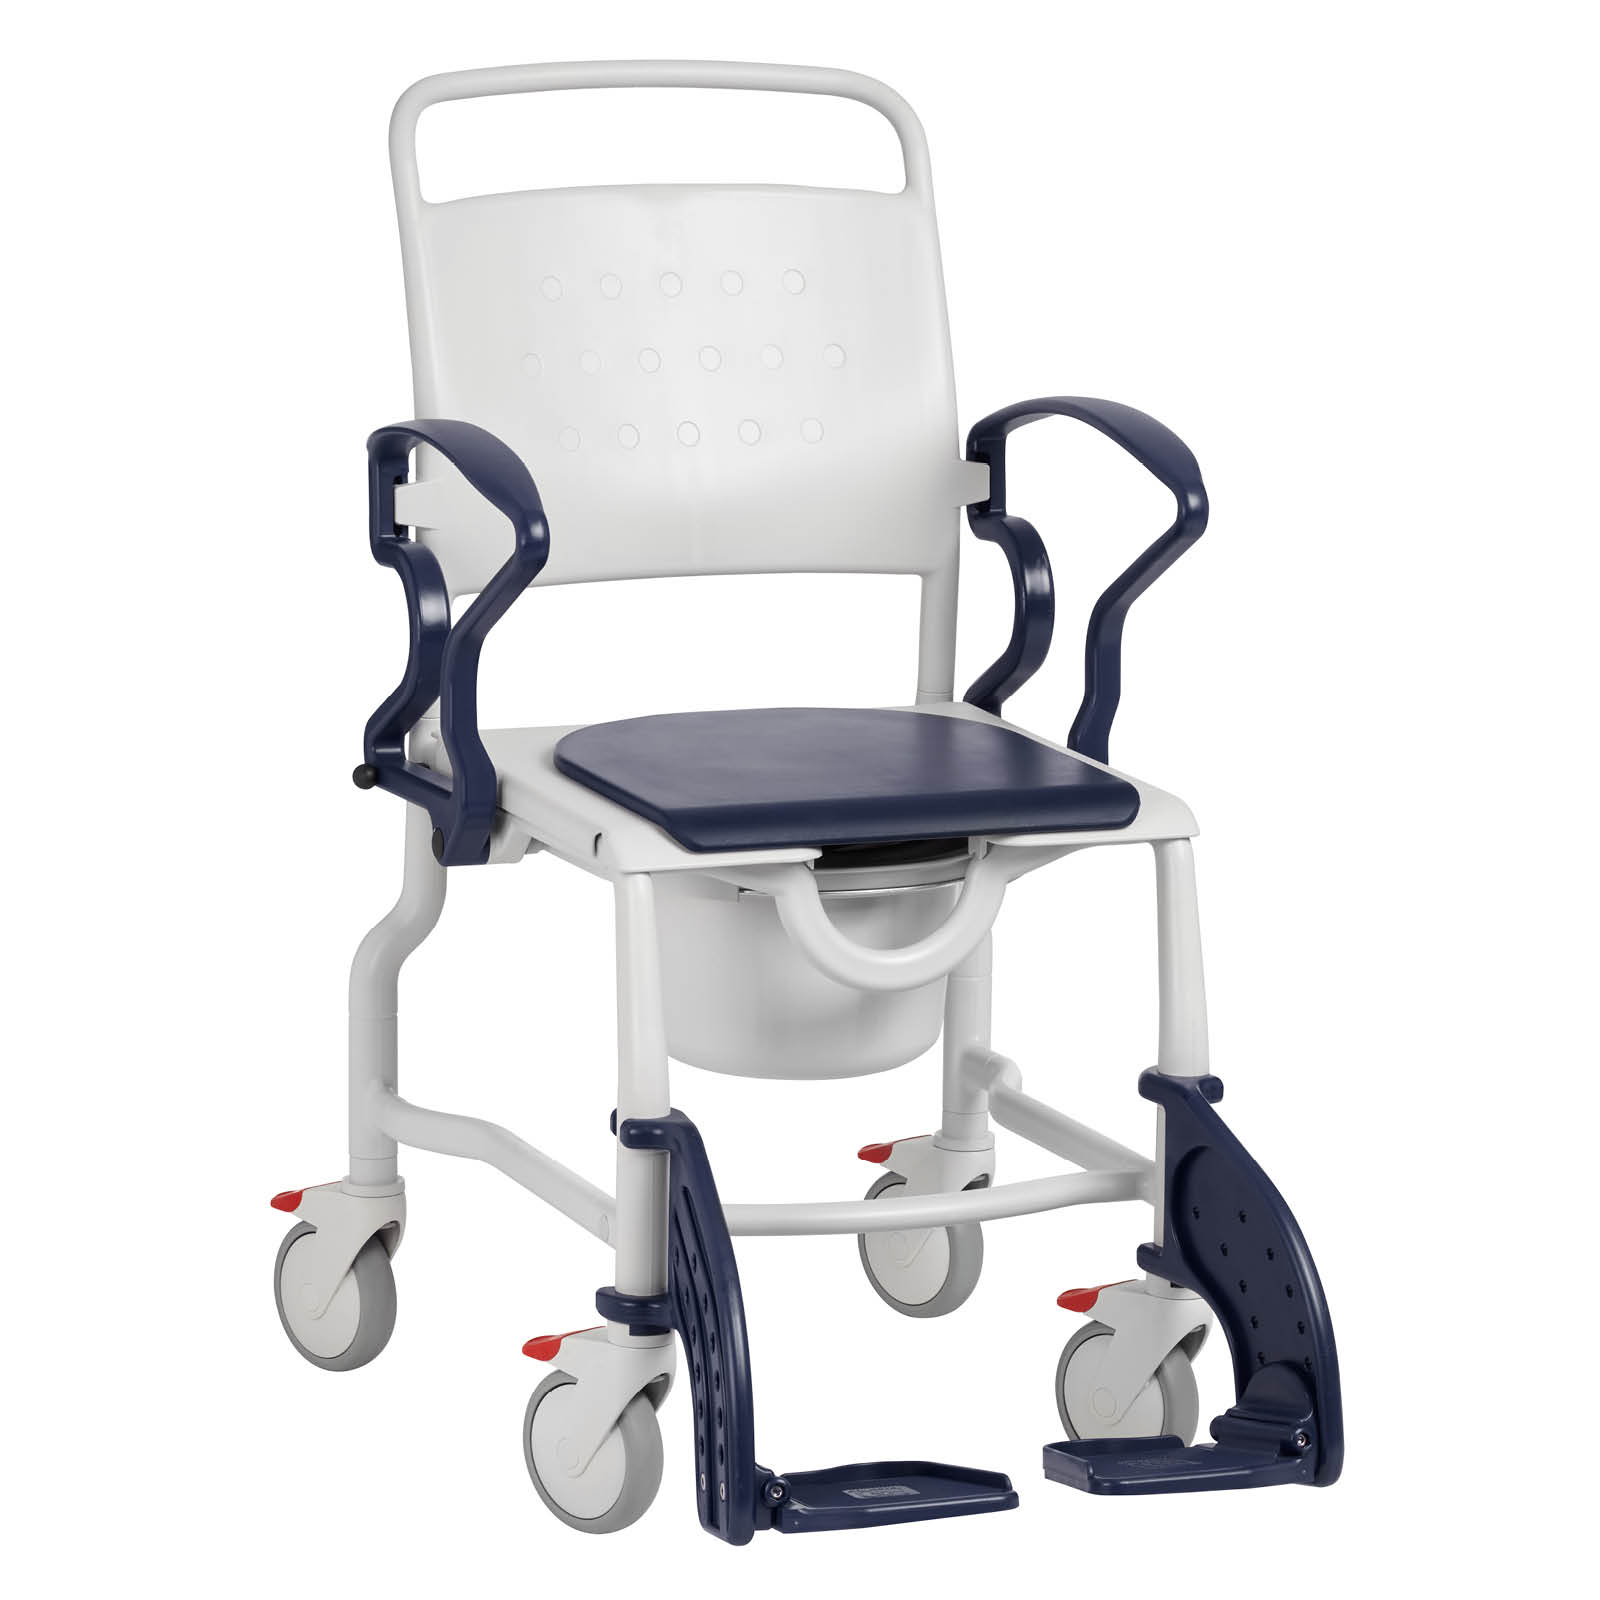 Chaise toilettes à roulettes, chaise pour les toilettes à roulettes